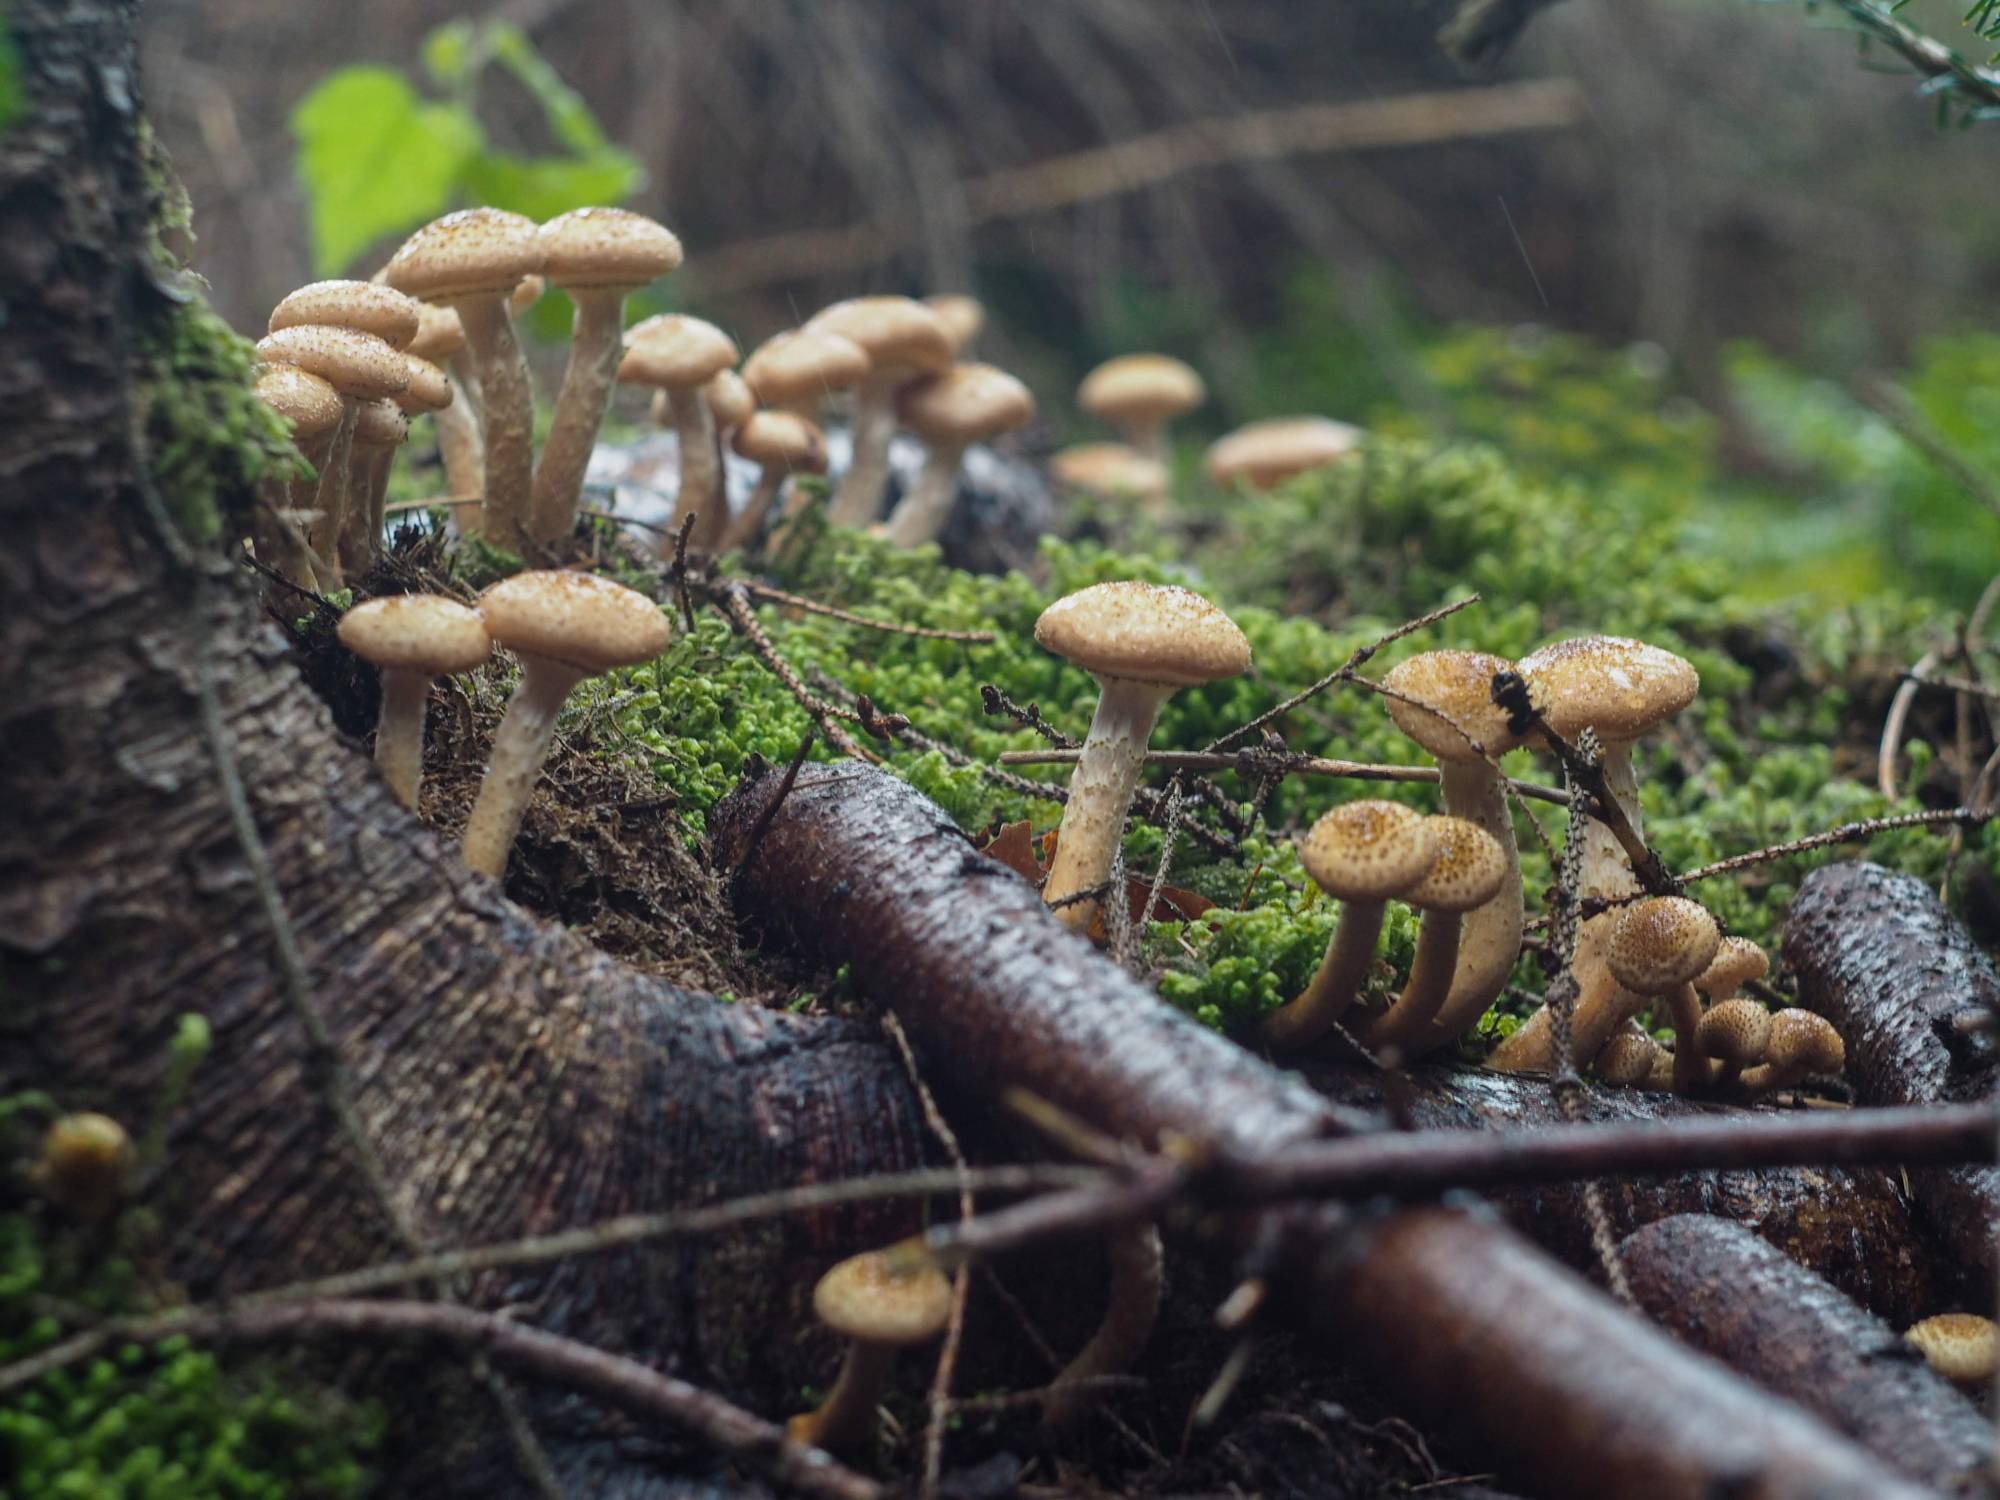 Carpathian honey mushrooms